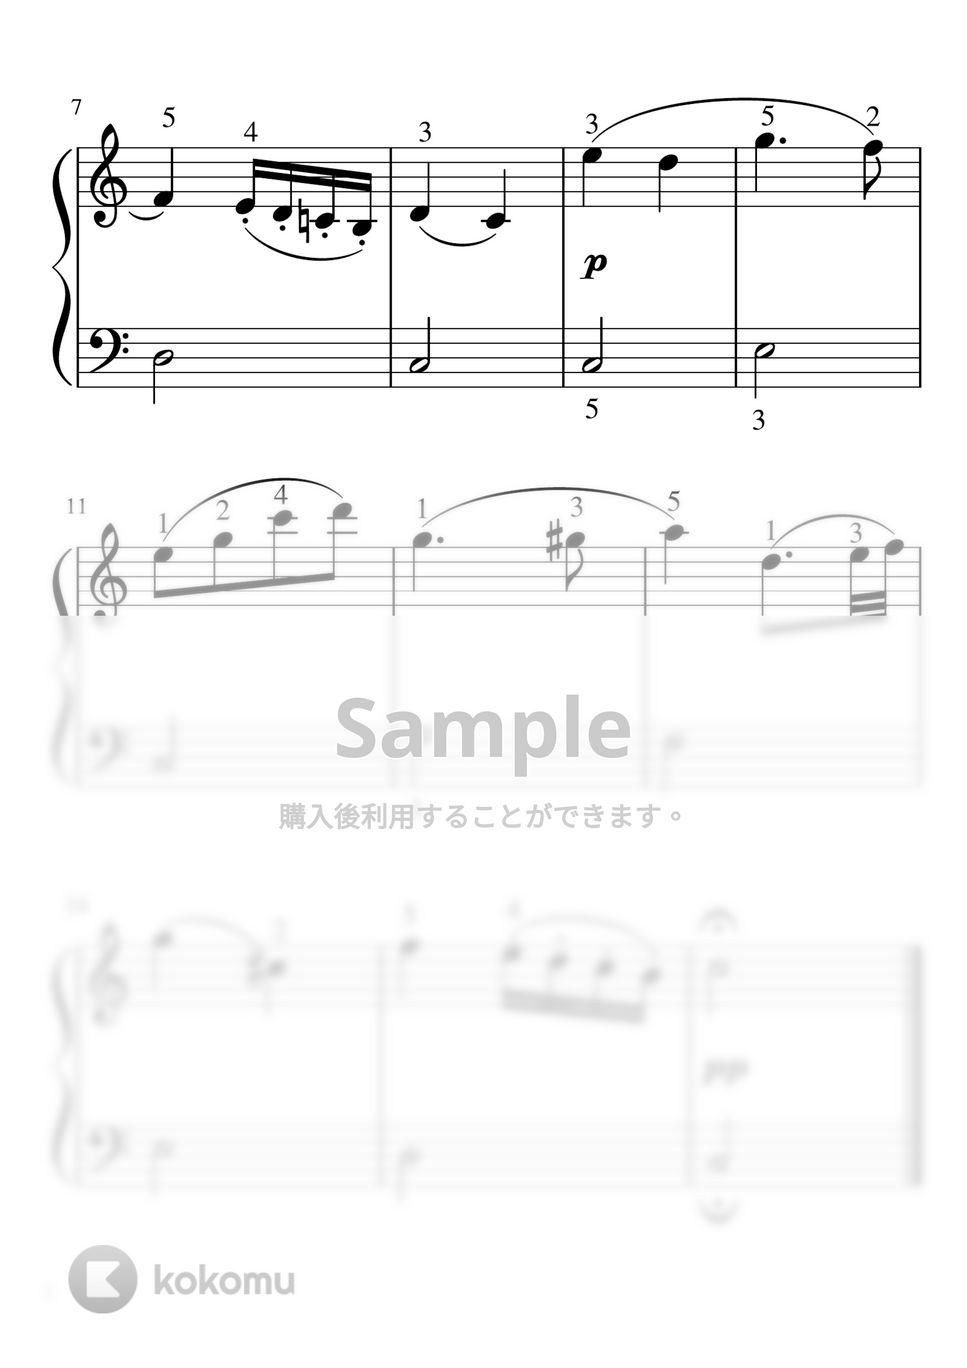 ベートーヴェン - ピアノソナタ第8番「悲愴」第２楽章 (Cdur・ピアノソロ入門〜初級) by pfkaori